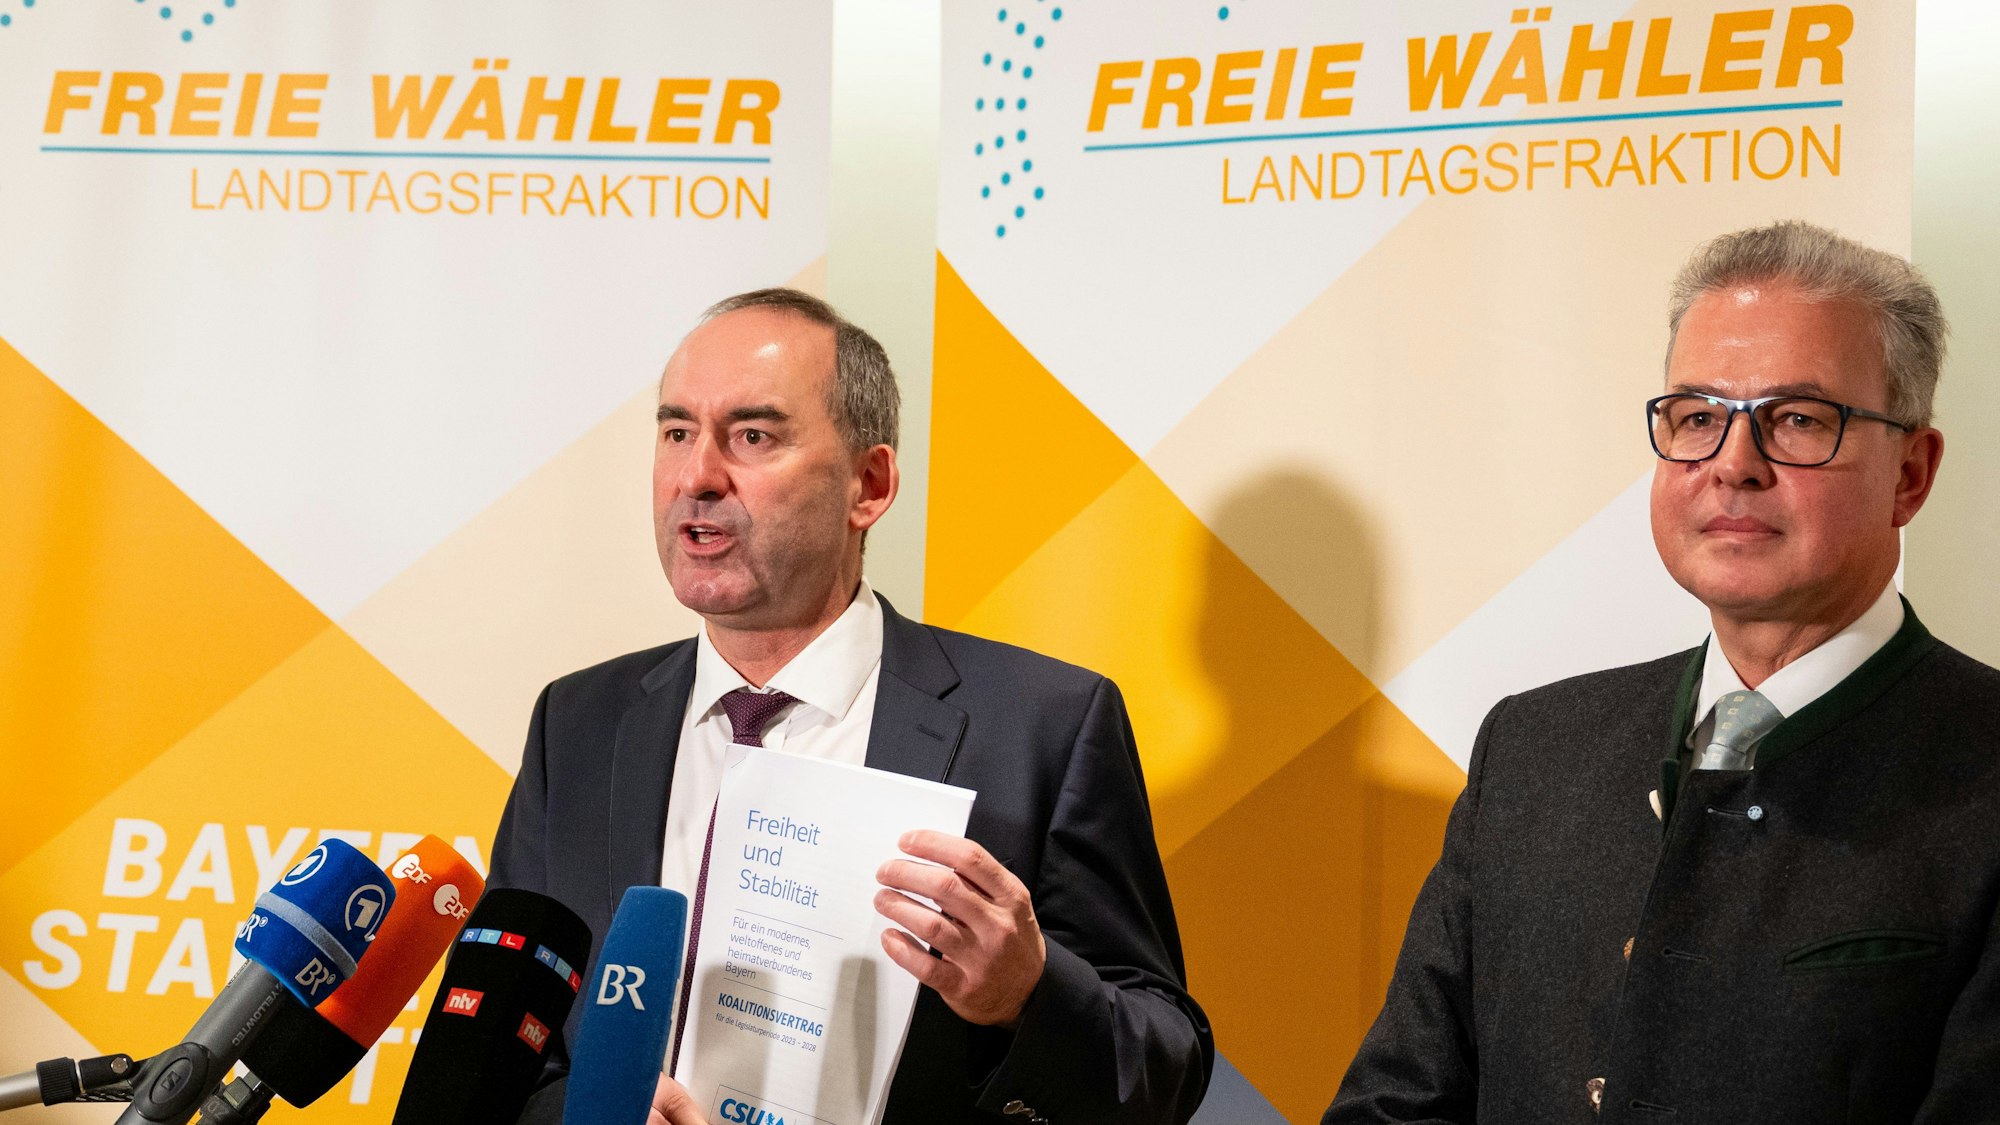 Freie-Wähler-Chef Hubert Aiwanger (l) präsentiert den unterschriebenen Koalitionsvertrag mit der CSU. Die Affäre um das antisemitische Flugblatt nimmt indes eine Wendung, Ermittler nehmen den Hinweisgeber ins Visier.